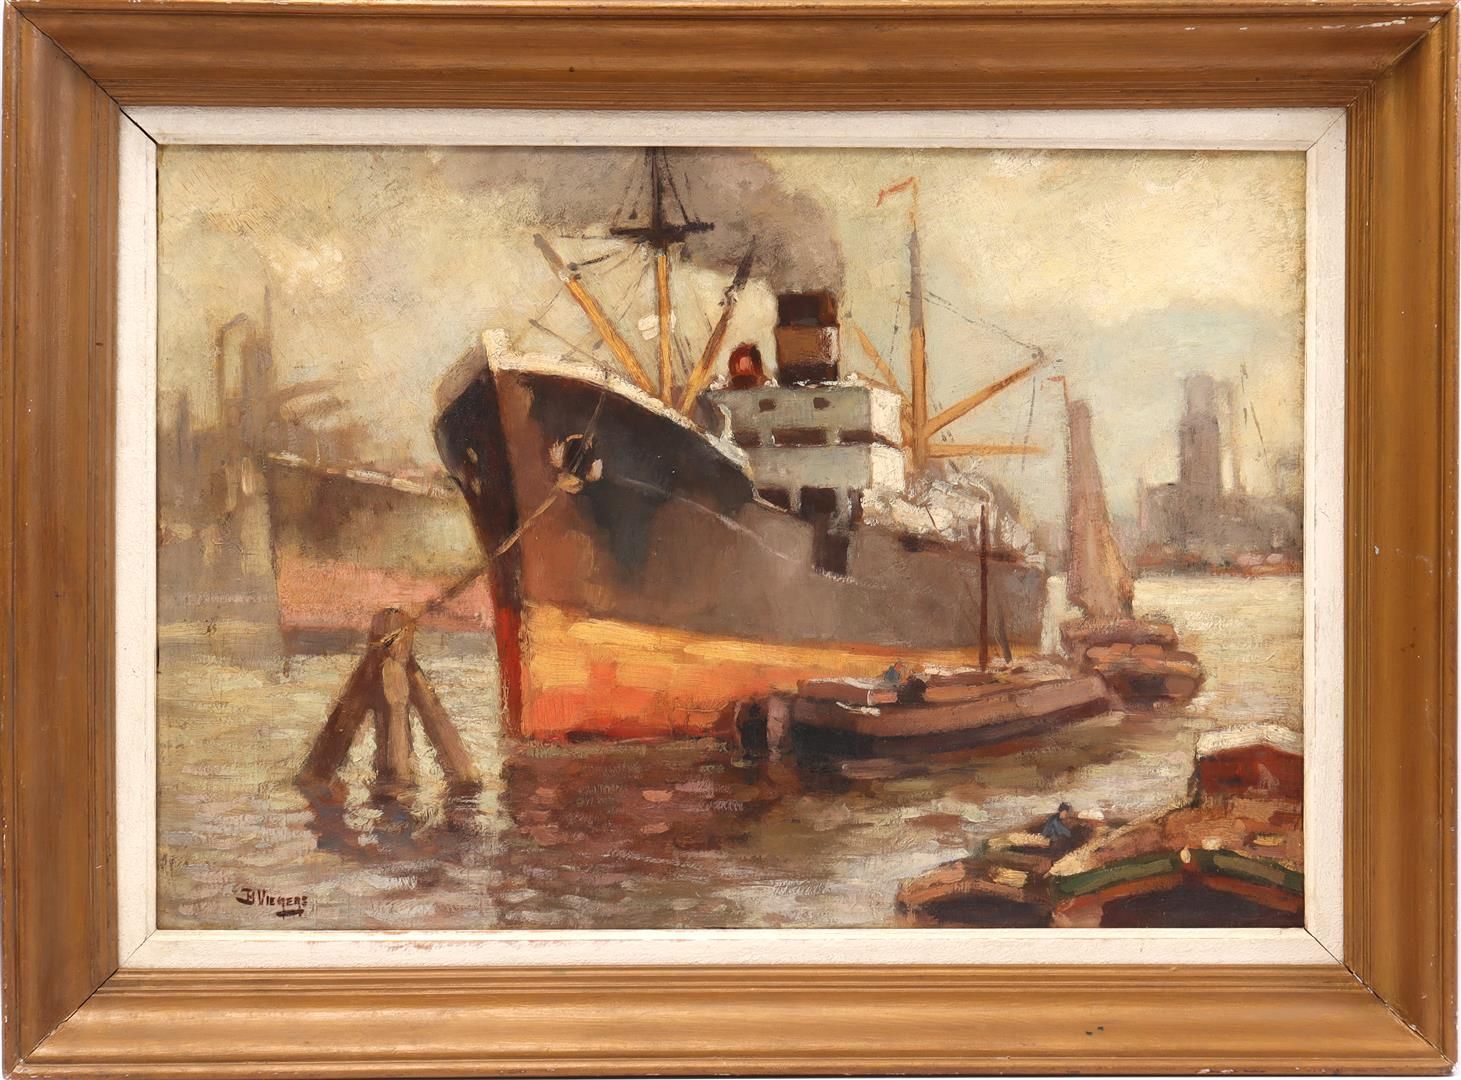 Ben Viegers Ben Viegers (1886-1947)

Ships in the harbour, panel 51x74 cm